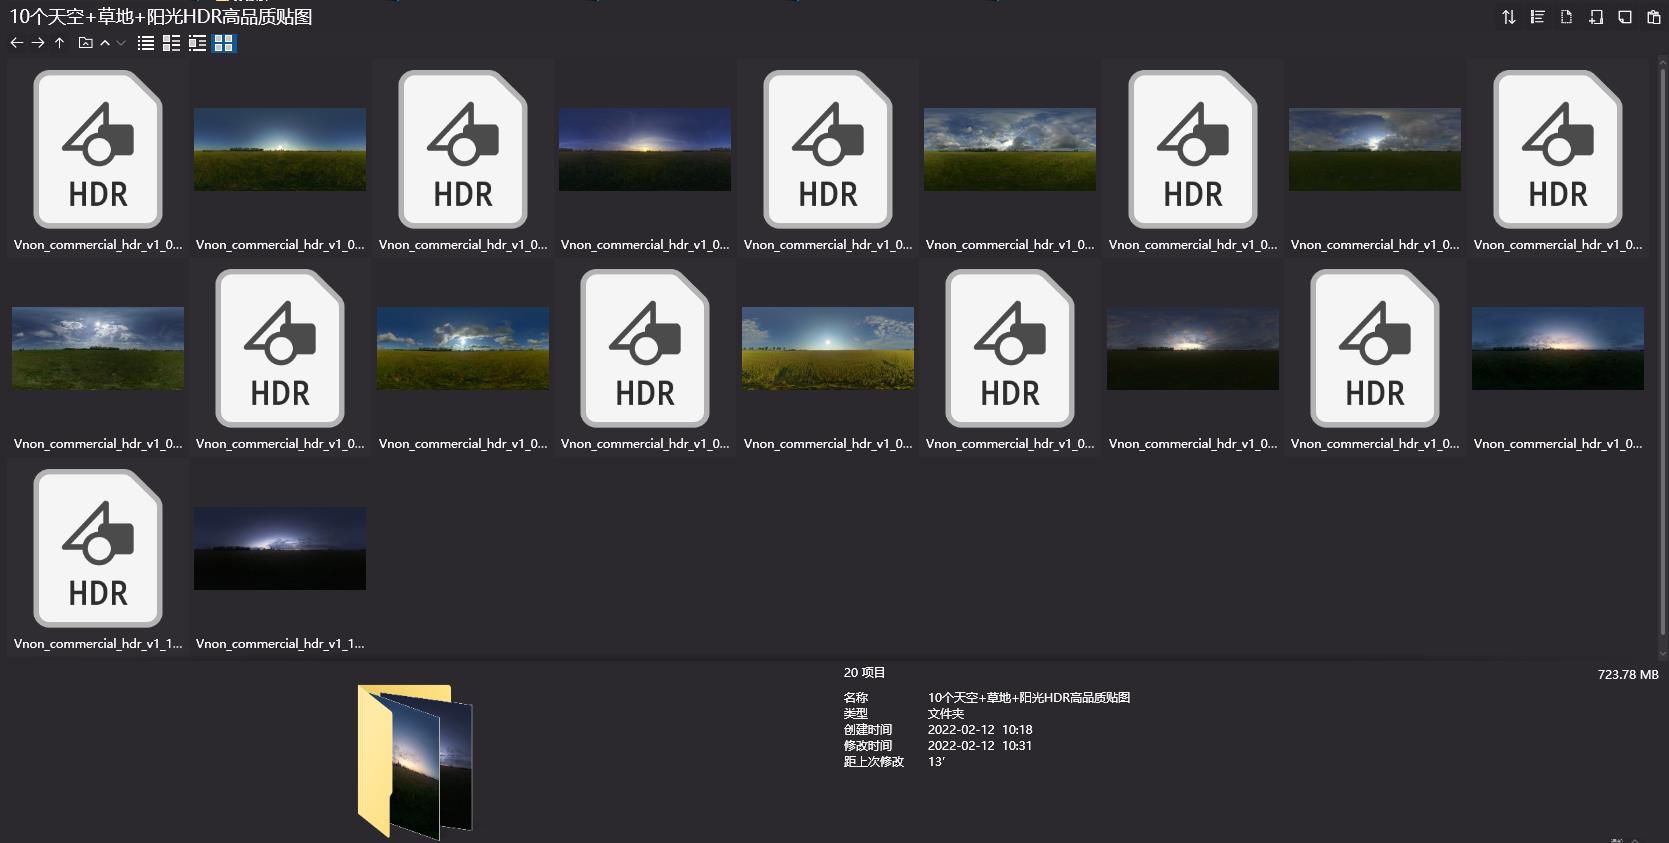 HDR贴图,360°HDR贴图,天空贴图,天空HDR贴图,草地HDR贴图,森林HDR贴图,高清贴图下载,高清贴图素材,高品质贴图